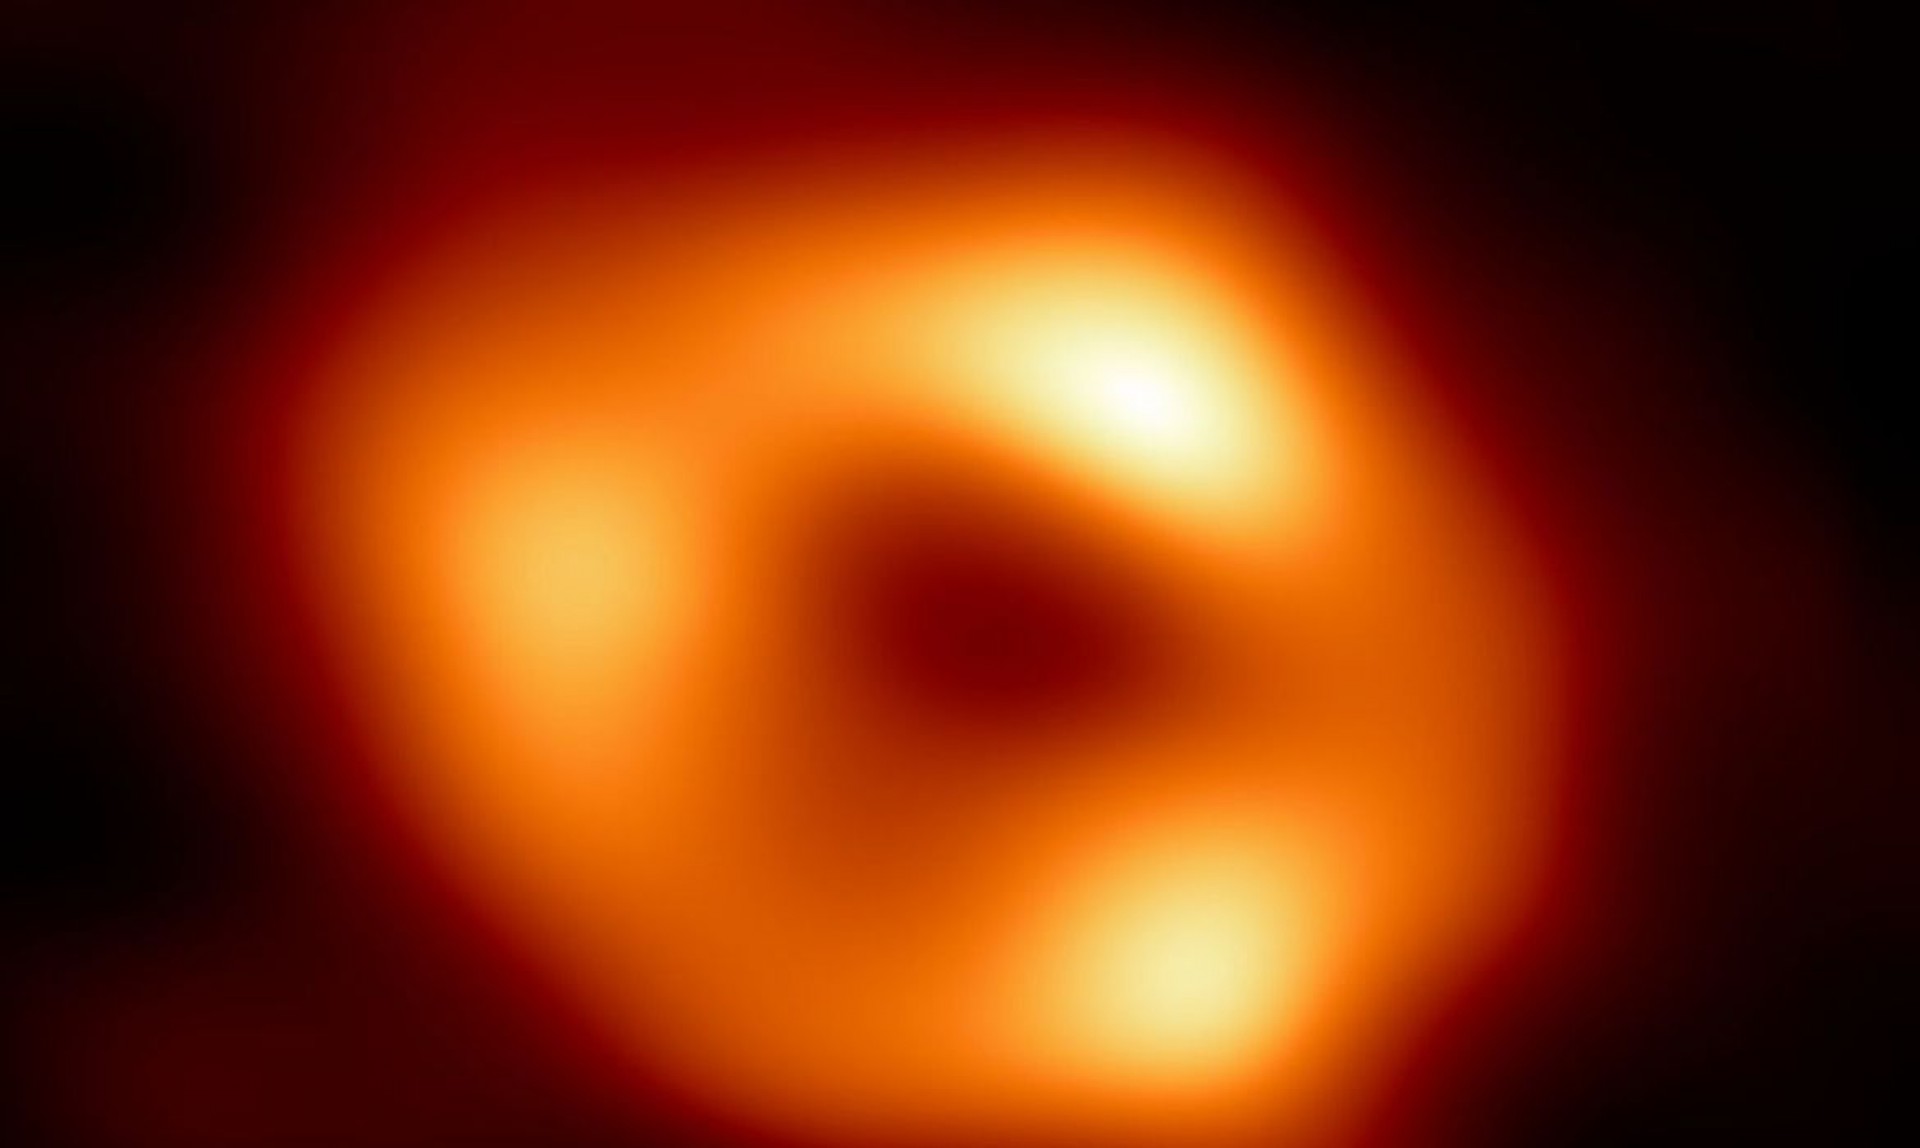 Ela foi capturada pelo Event Horizon Telescope - que fez a incrível foto do Sagitário A*, buraco negro da Via Láctea.